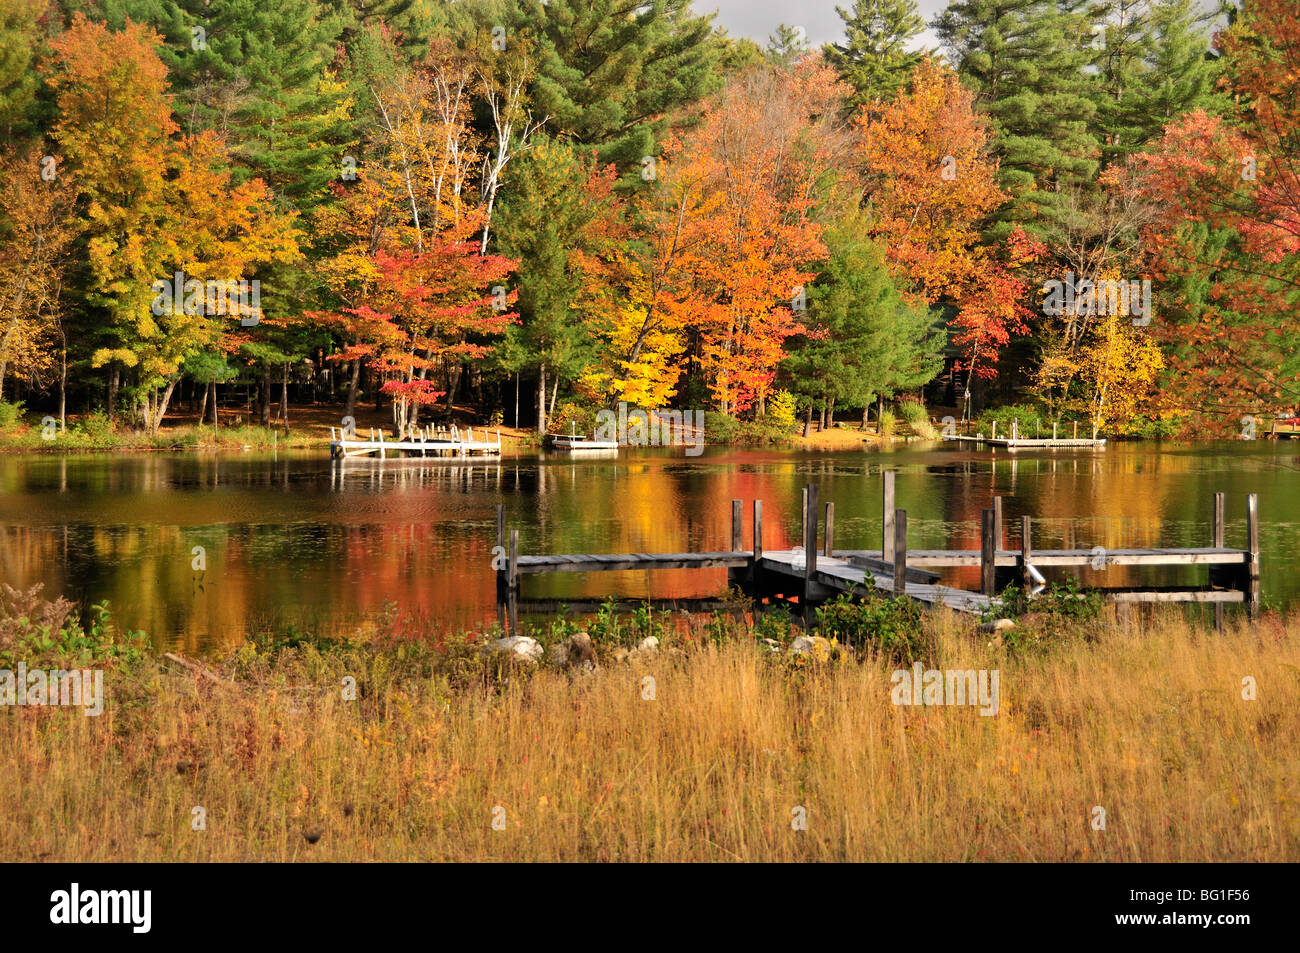 Brillante Nuova Inghilterra fogliame di autunno si riflette nelle calme acque di un piccolo lago nella parte inferiore dello stato di New York, Stati Uniti d'America. Foto Stock